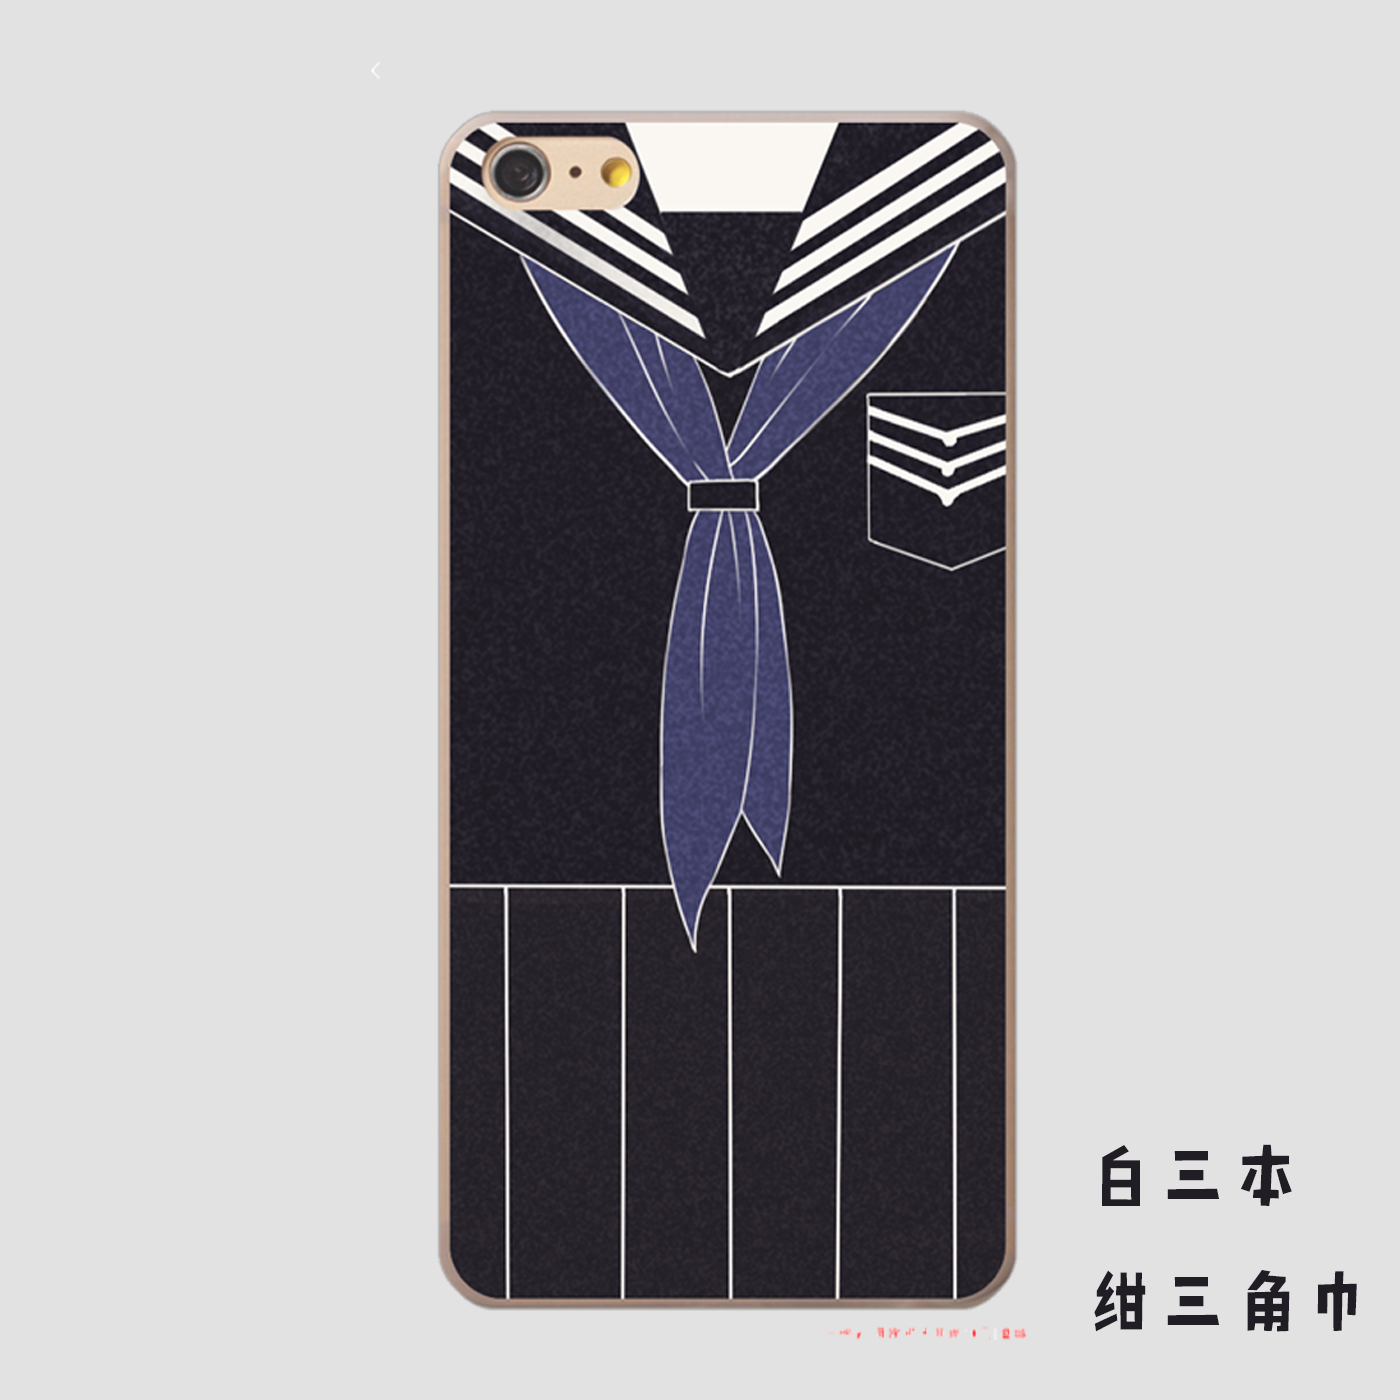 [一起家]JK制服手机壳iphone6/6p蛇腹白三本陪花绀三角巾